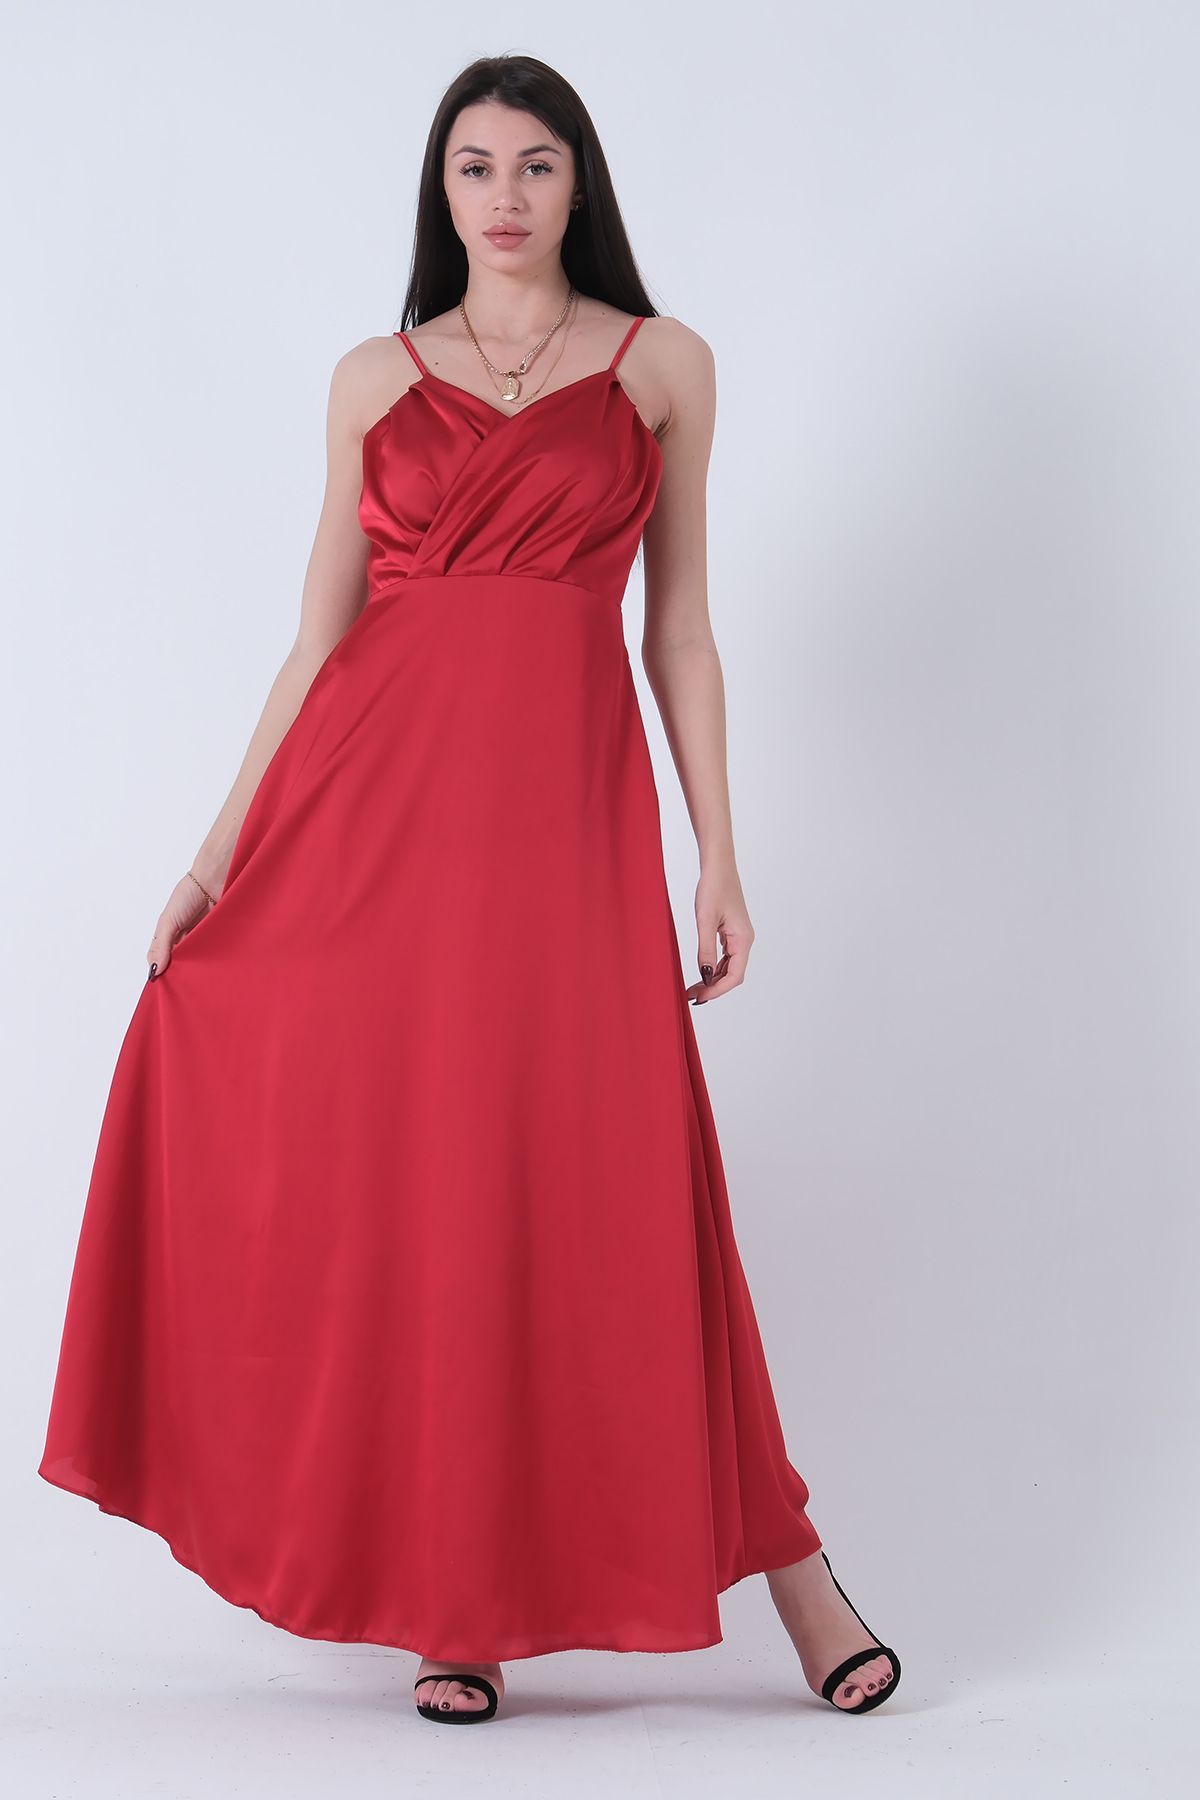 Feminist İp Askılı Saten Abiye Elbise Kırmızı 4201046